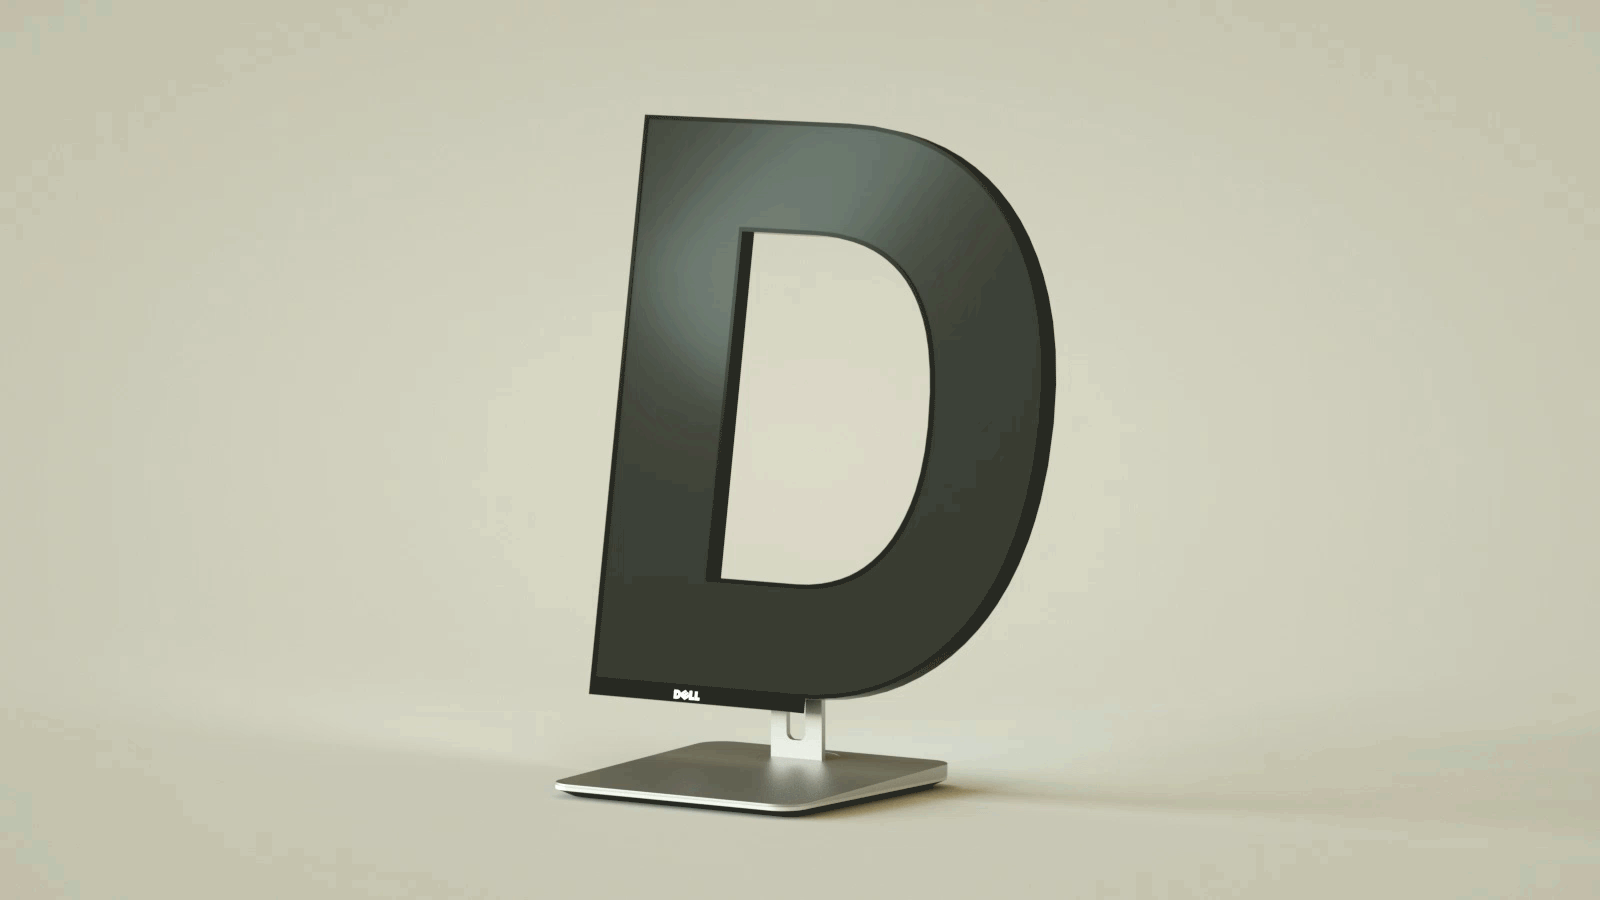 Alphabet Letters Designed As Electronic Gadgets - D